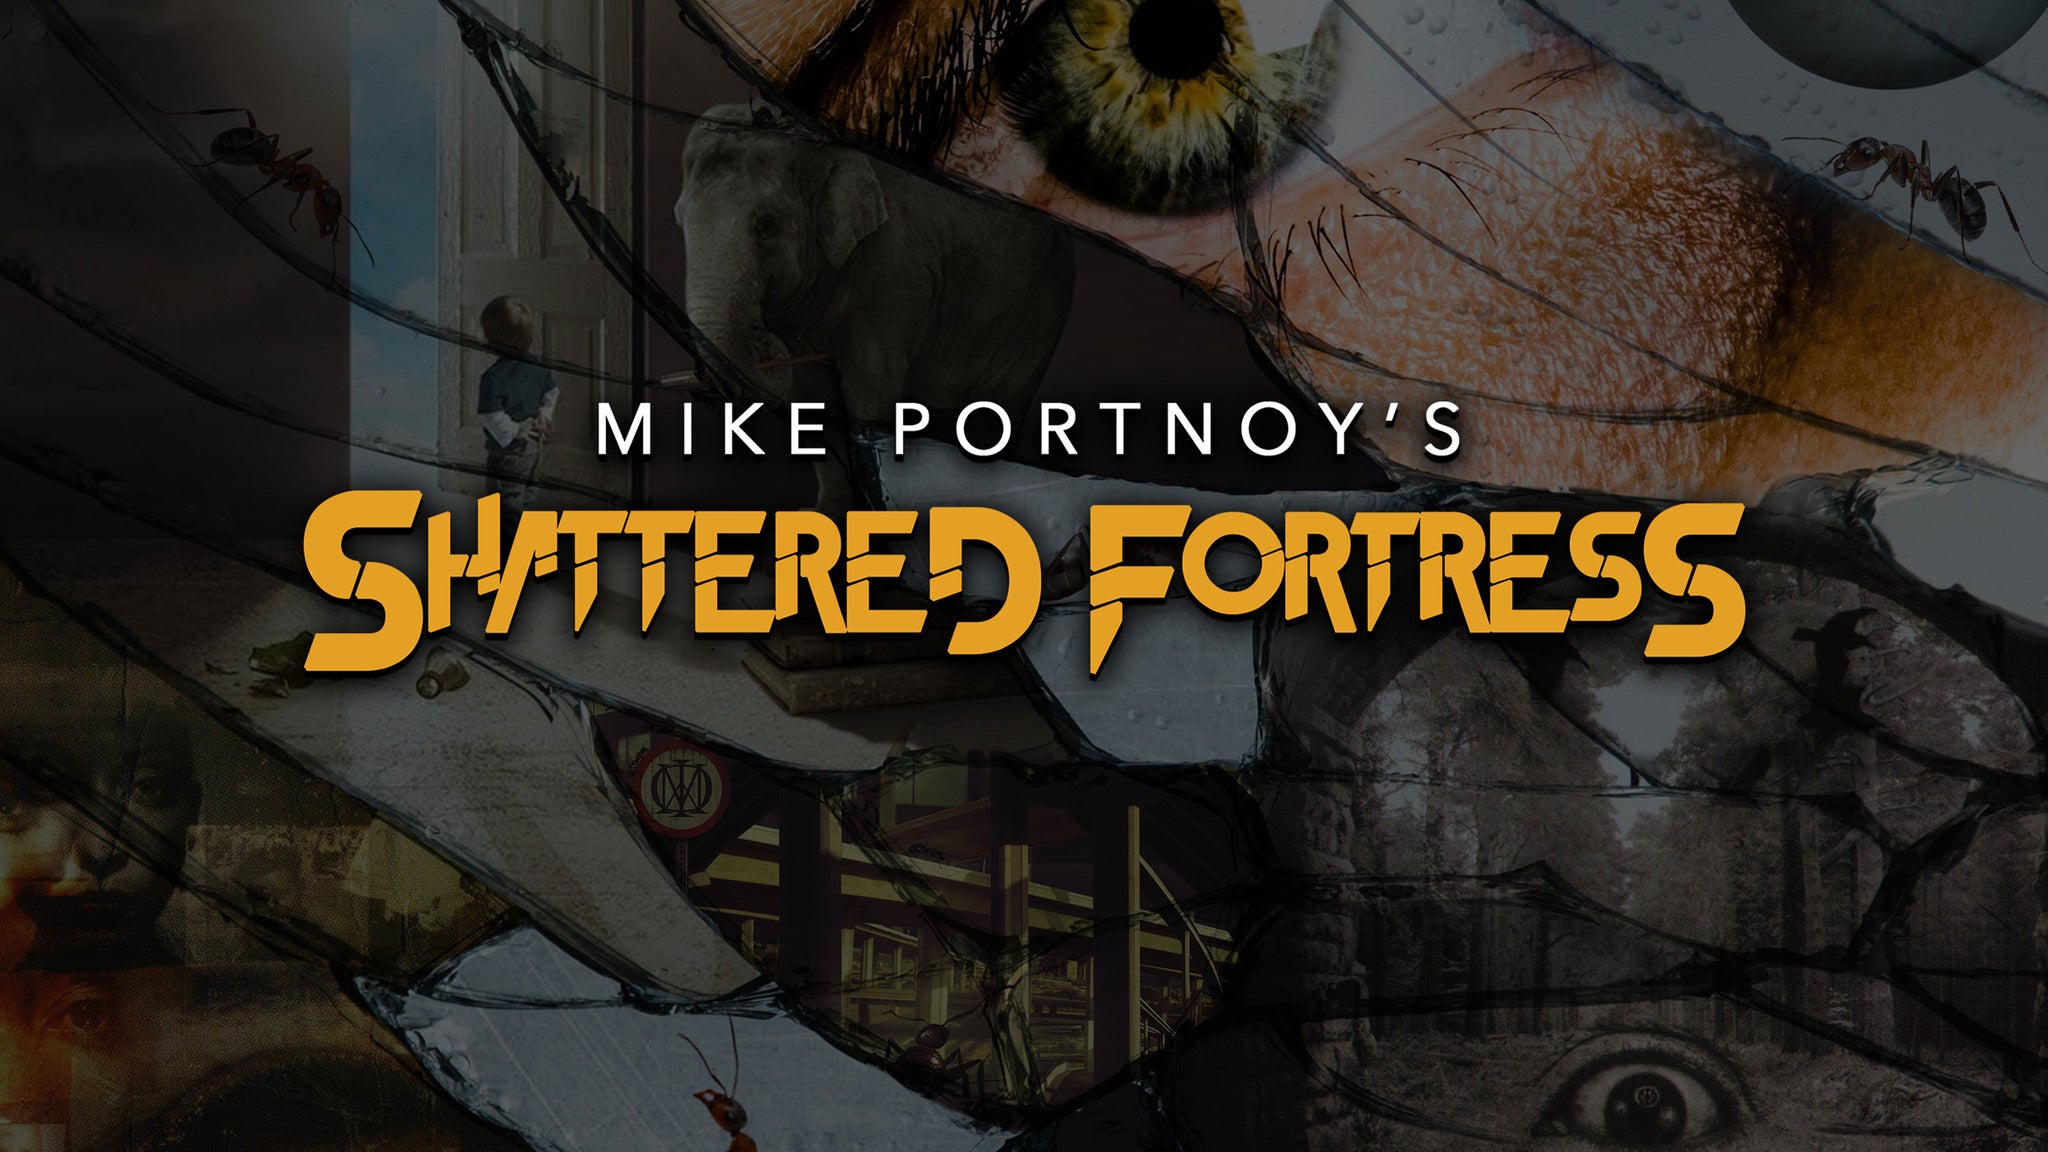 Mike Portnoy presale information on freepresalepasswords.com